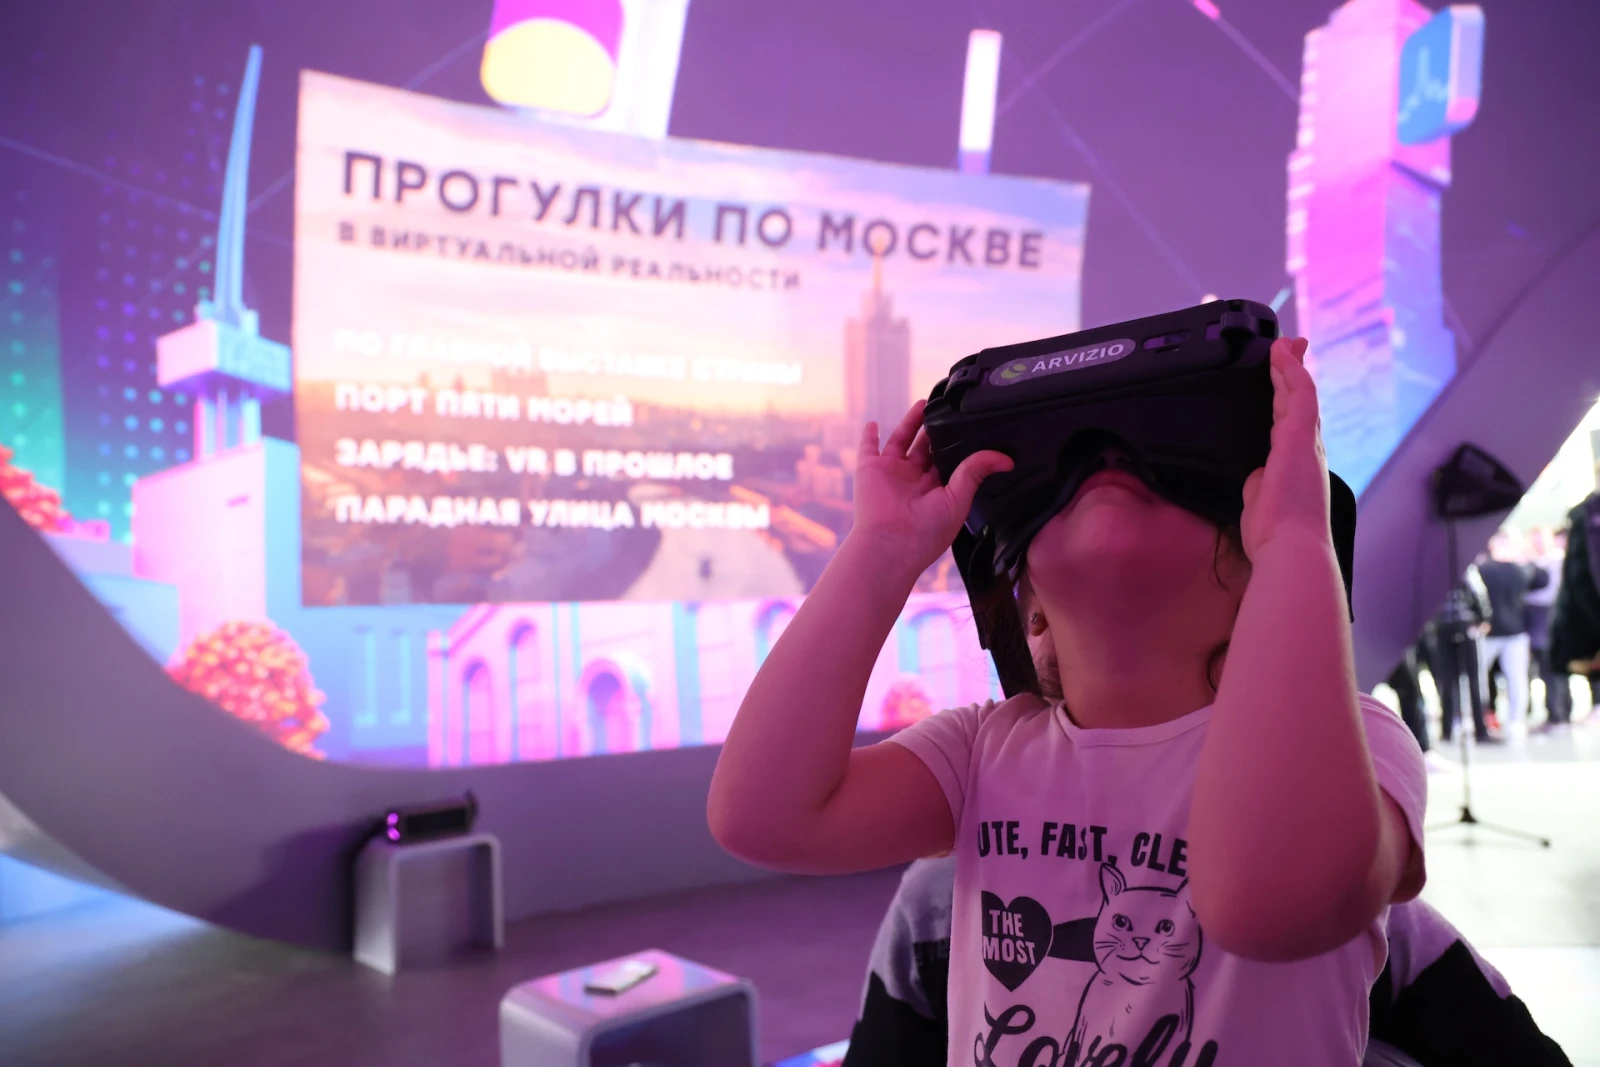 Эксперты по урбанистике обсудили с гостями пространства Москвы на выставке "Россия" новейшие тренды в городском благоустройстве